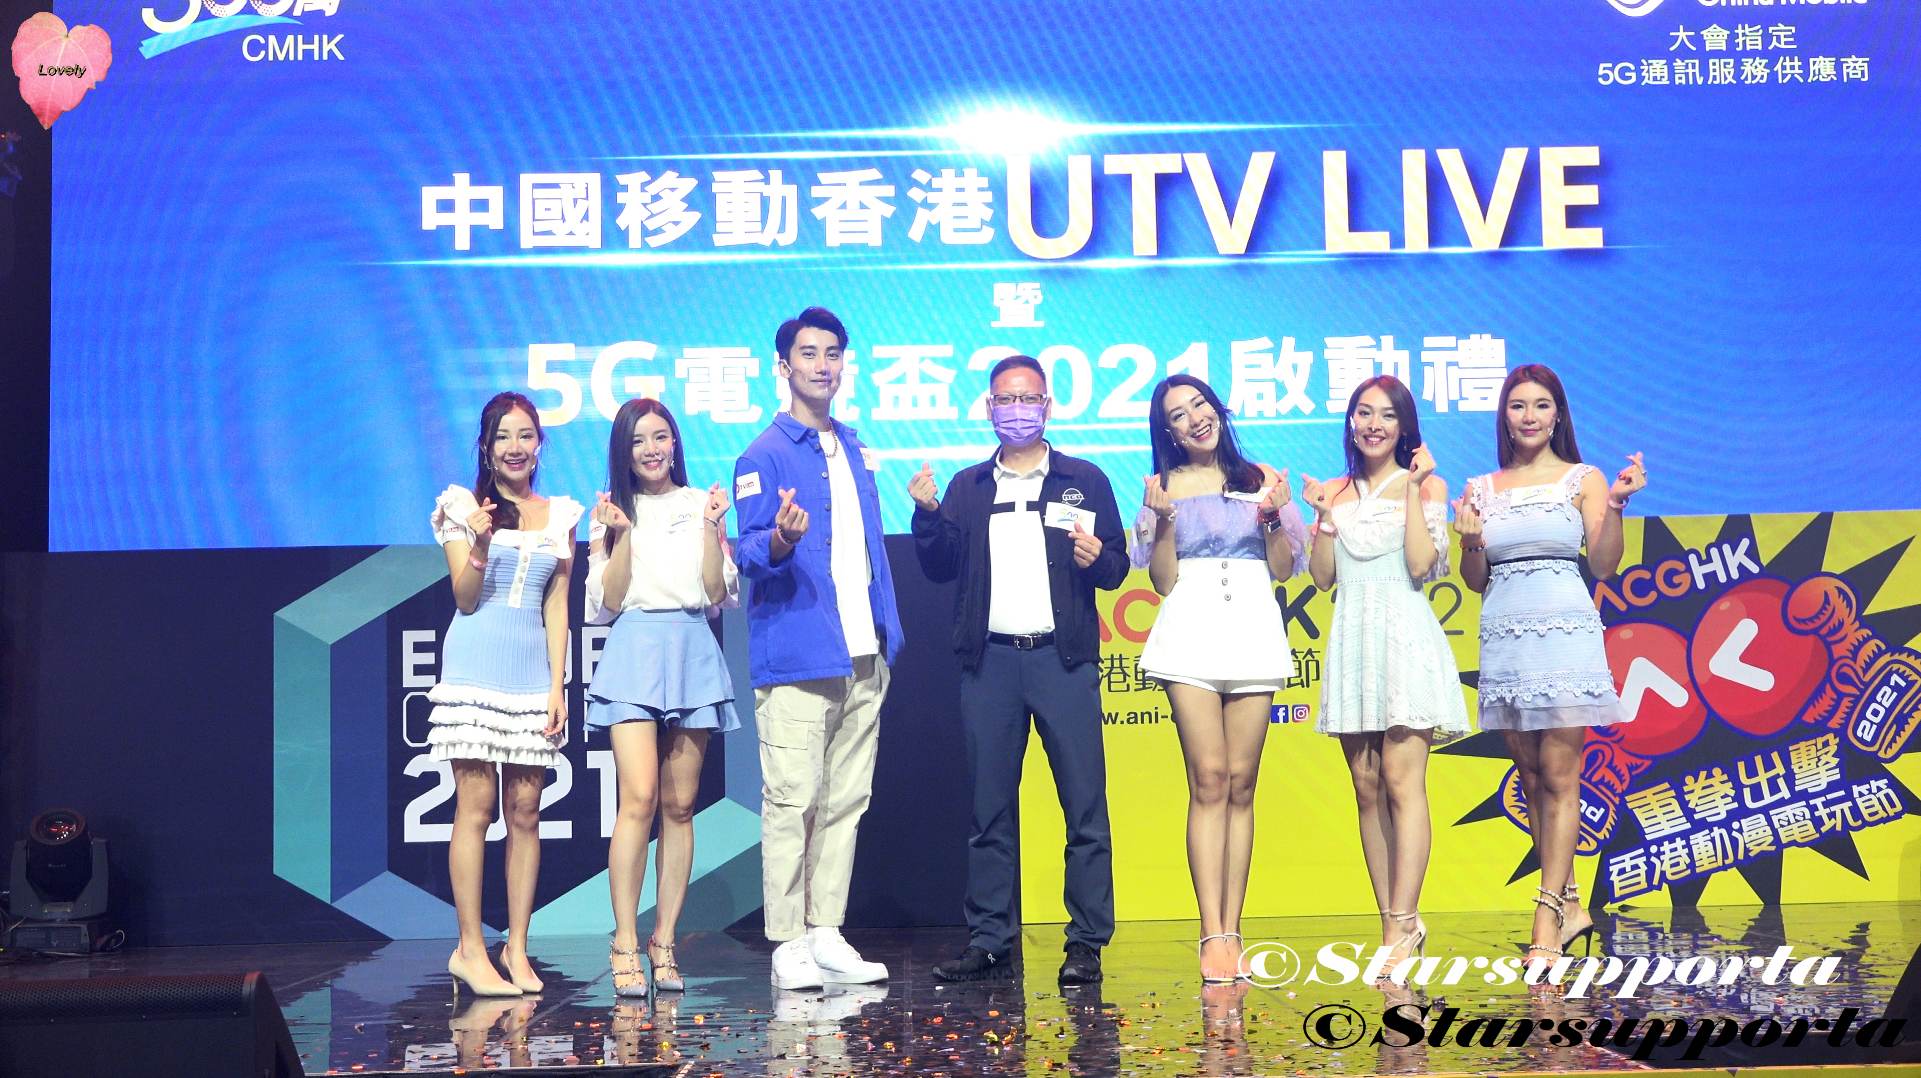 20210723 中國移動香港UTV LIVE - 5G 電競盃2021啟動禮 @ 香港動漫電玩節 @ 香港會議展覽中心